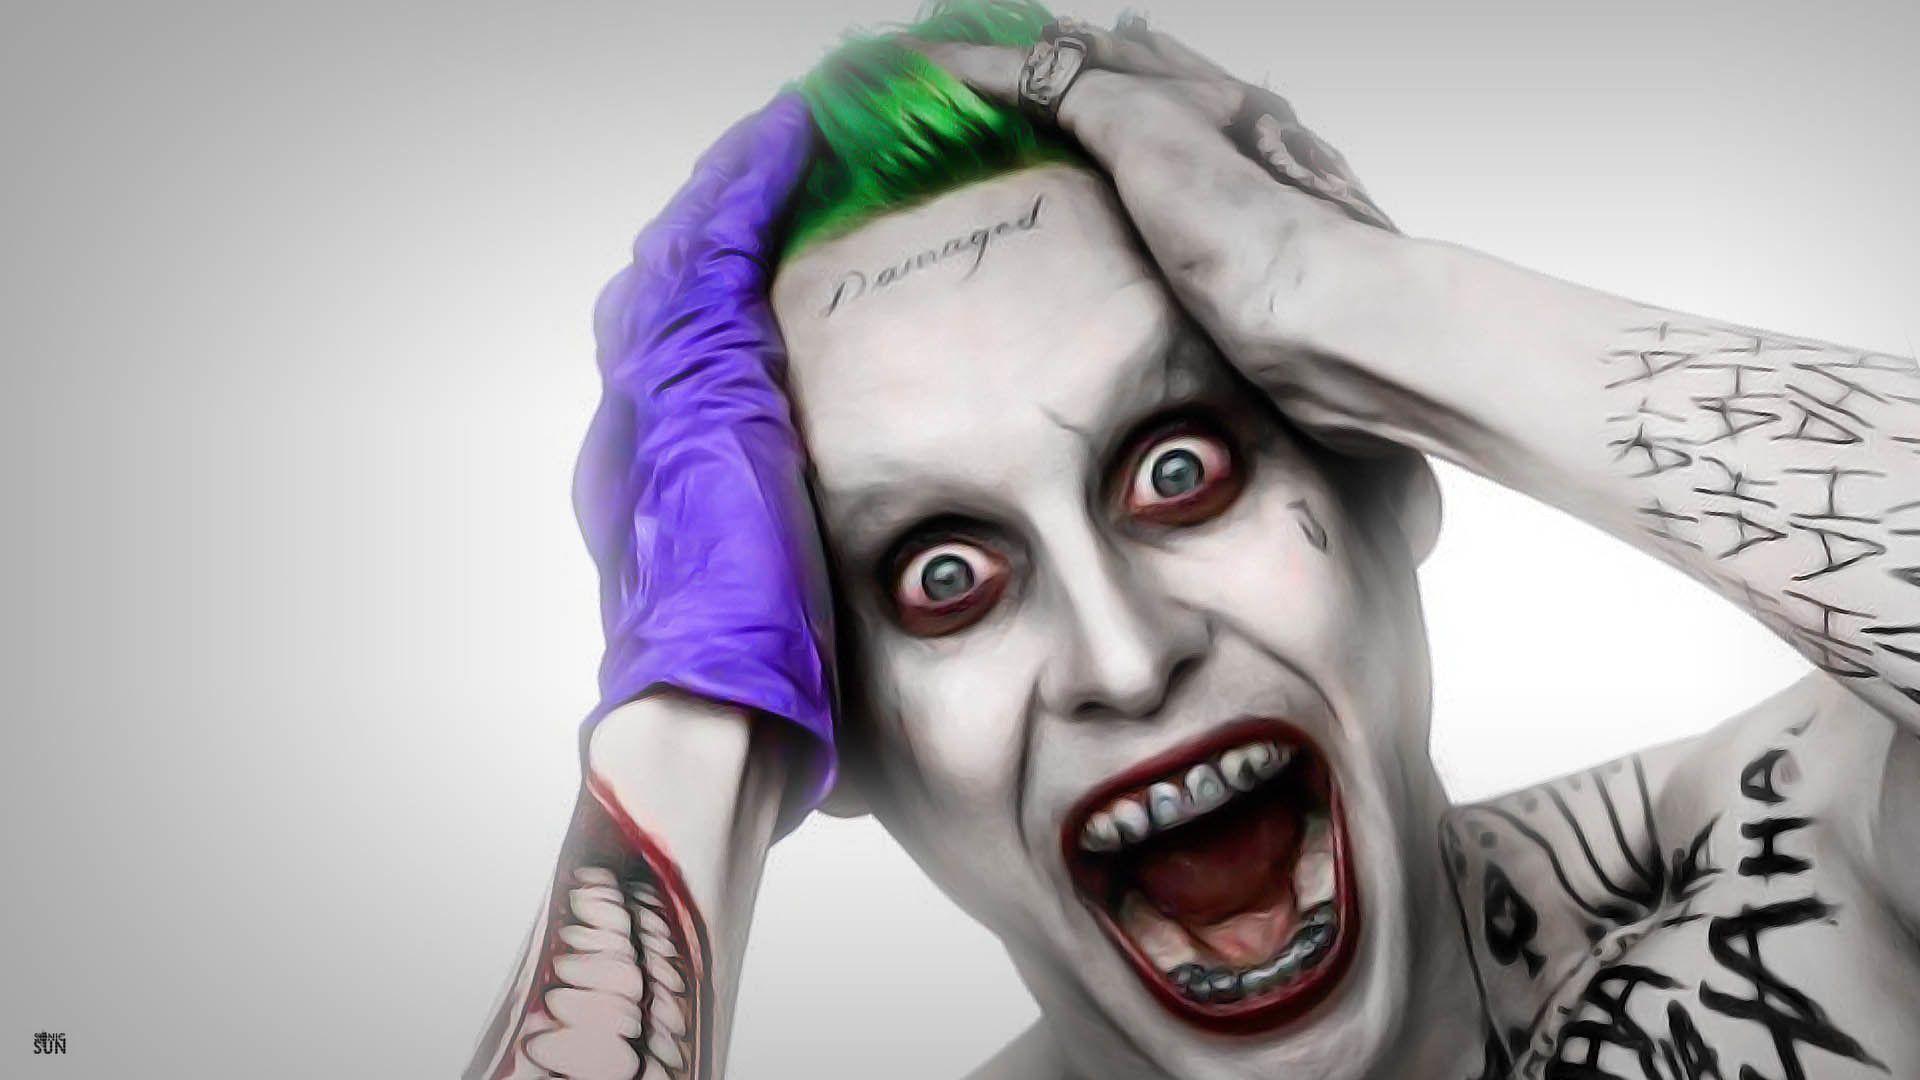  Joker  Suicide Squad 4K  Wallpapers  Top Free Joker  Suicide 